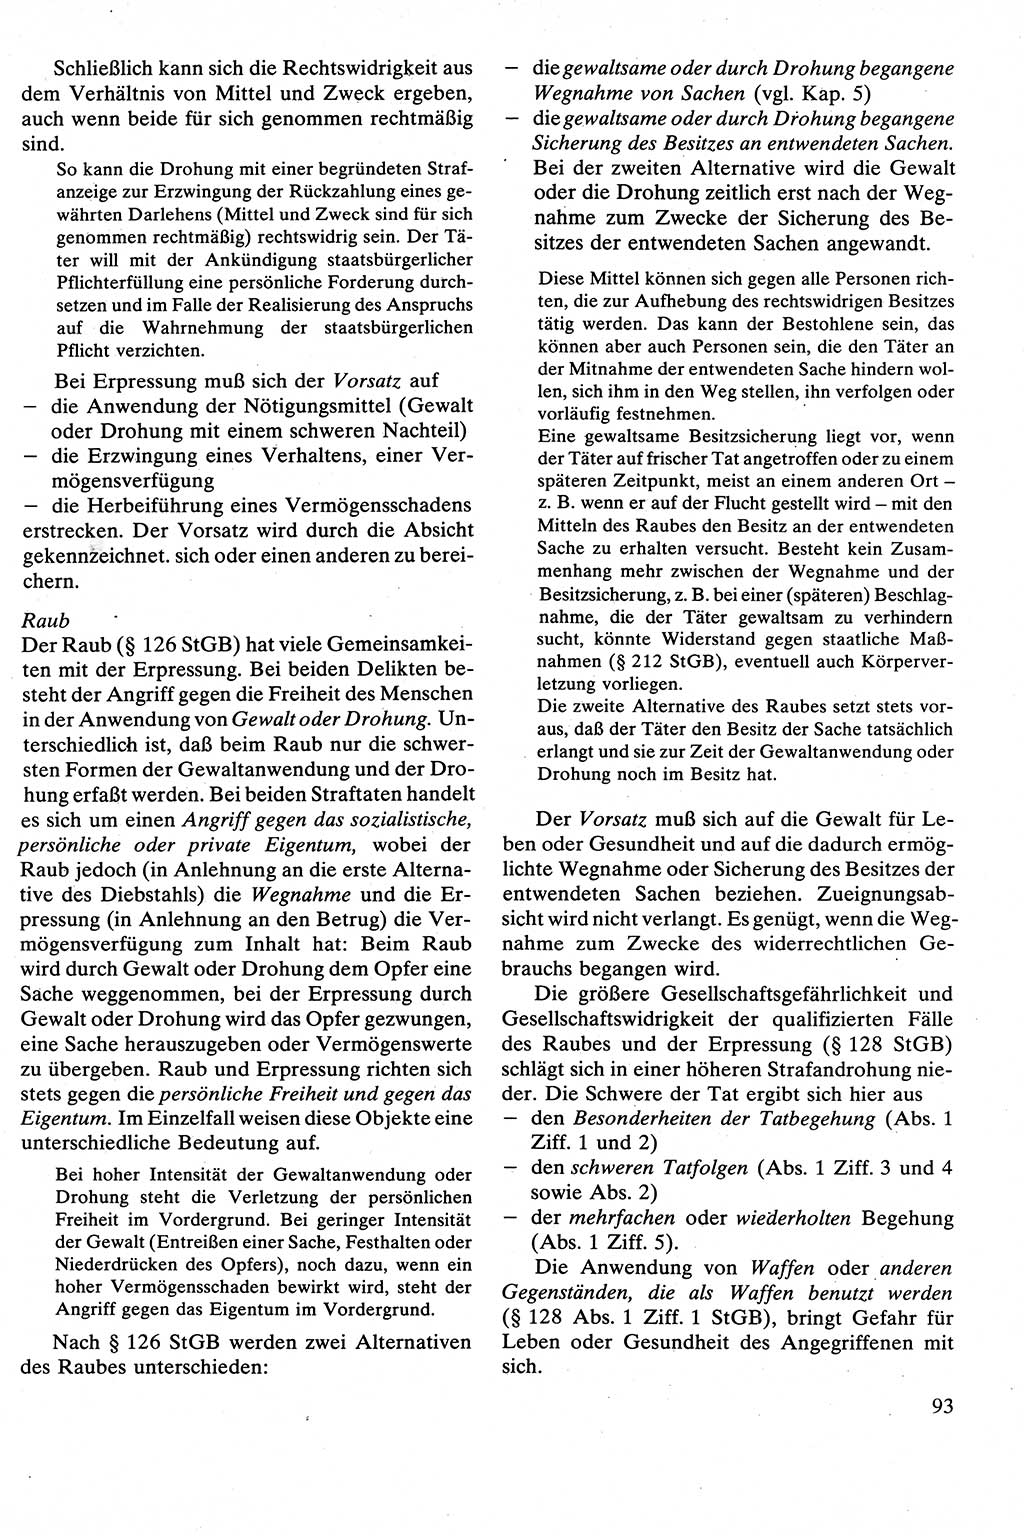 Strafrecht [Deutsche Demokratische Republik (DDR)], Besonderer Teil, Lehrbuch 1981, Seite 93 (Strafr. DDR BT Lb. 1981, S. 93)